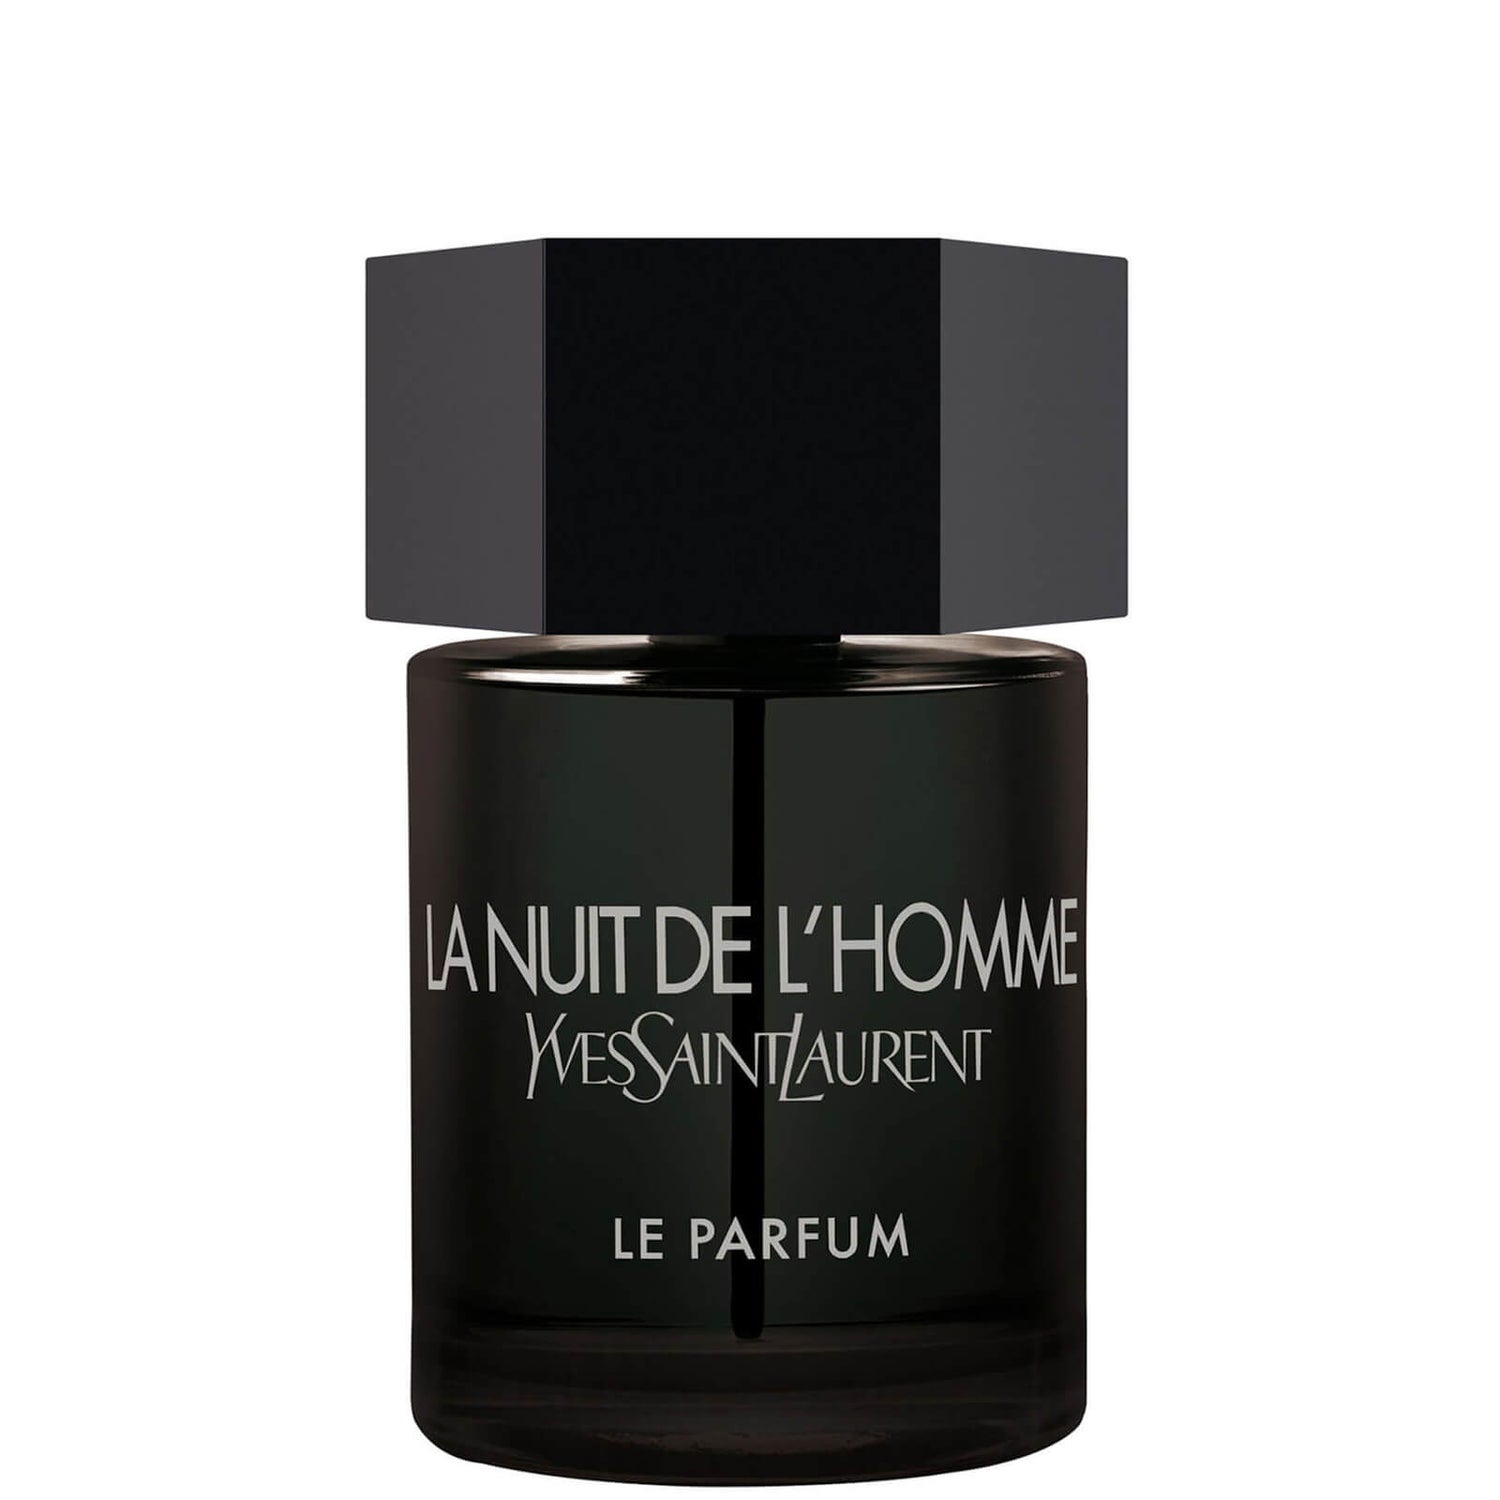 Yves Saint Laurent La Nuit De L'Homme Le Parfum Eau de Parfum 100ml